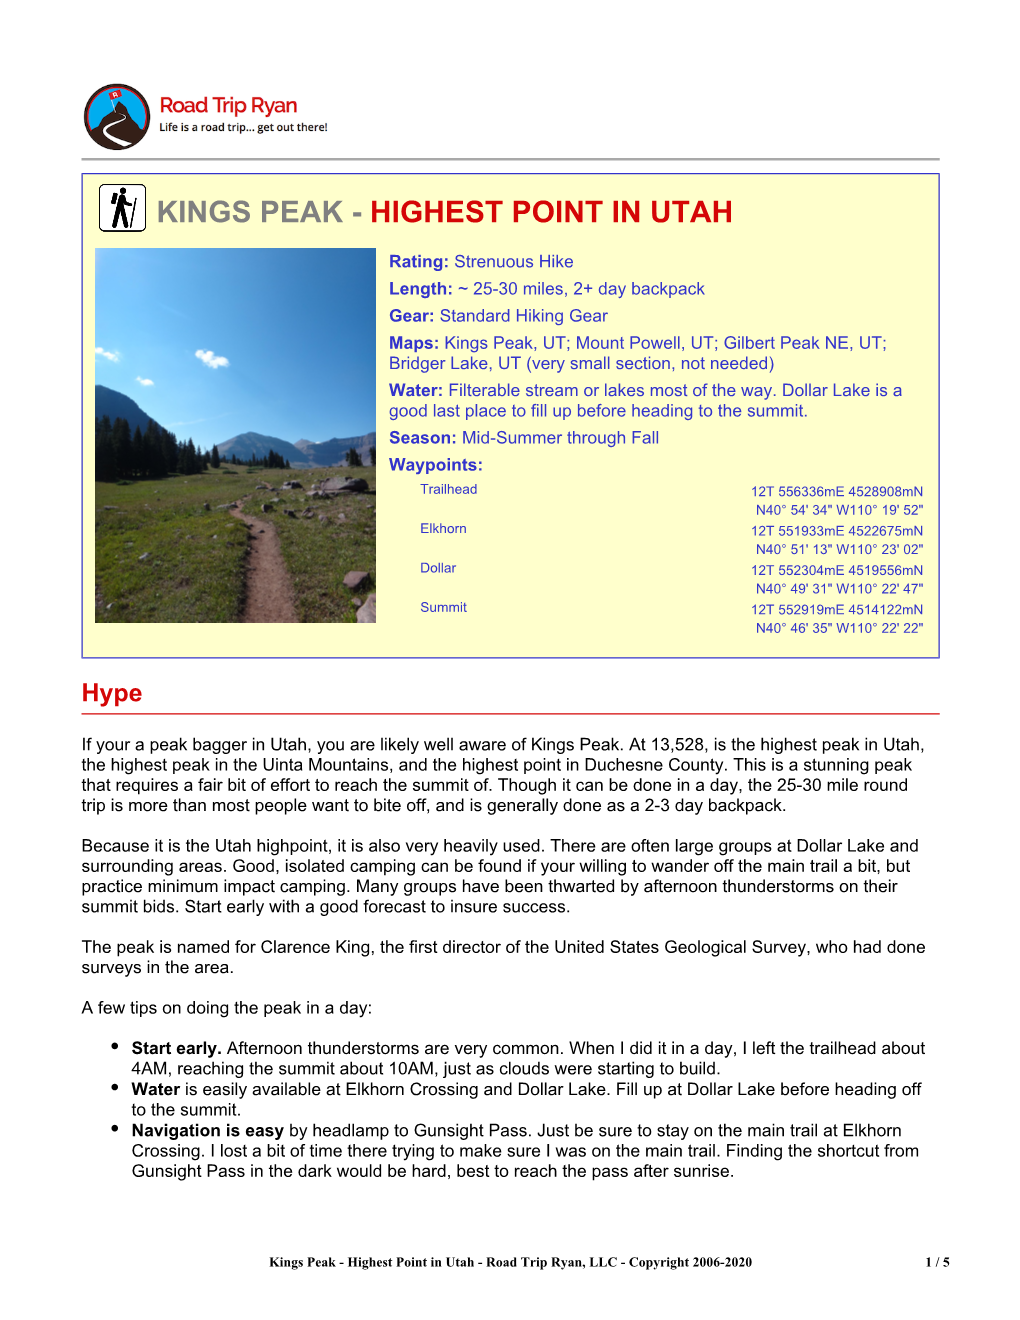 Kings Peak - Highest Point in Utah